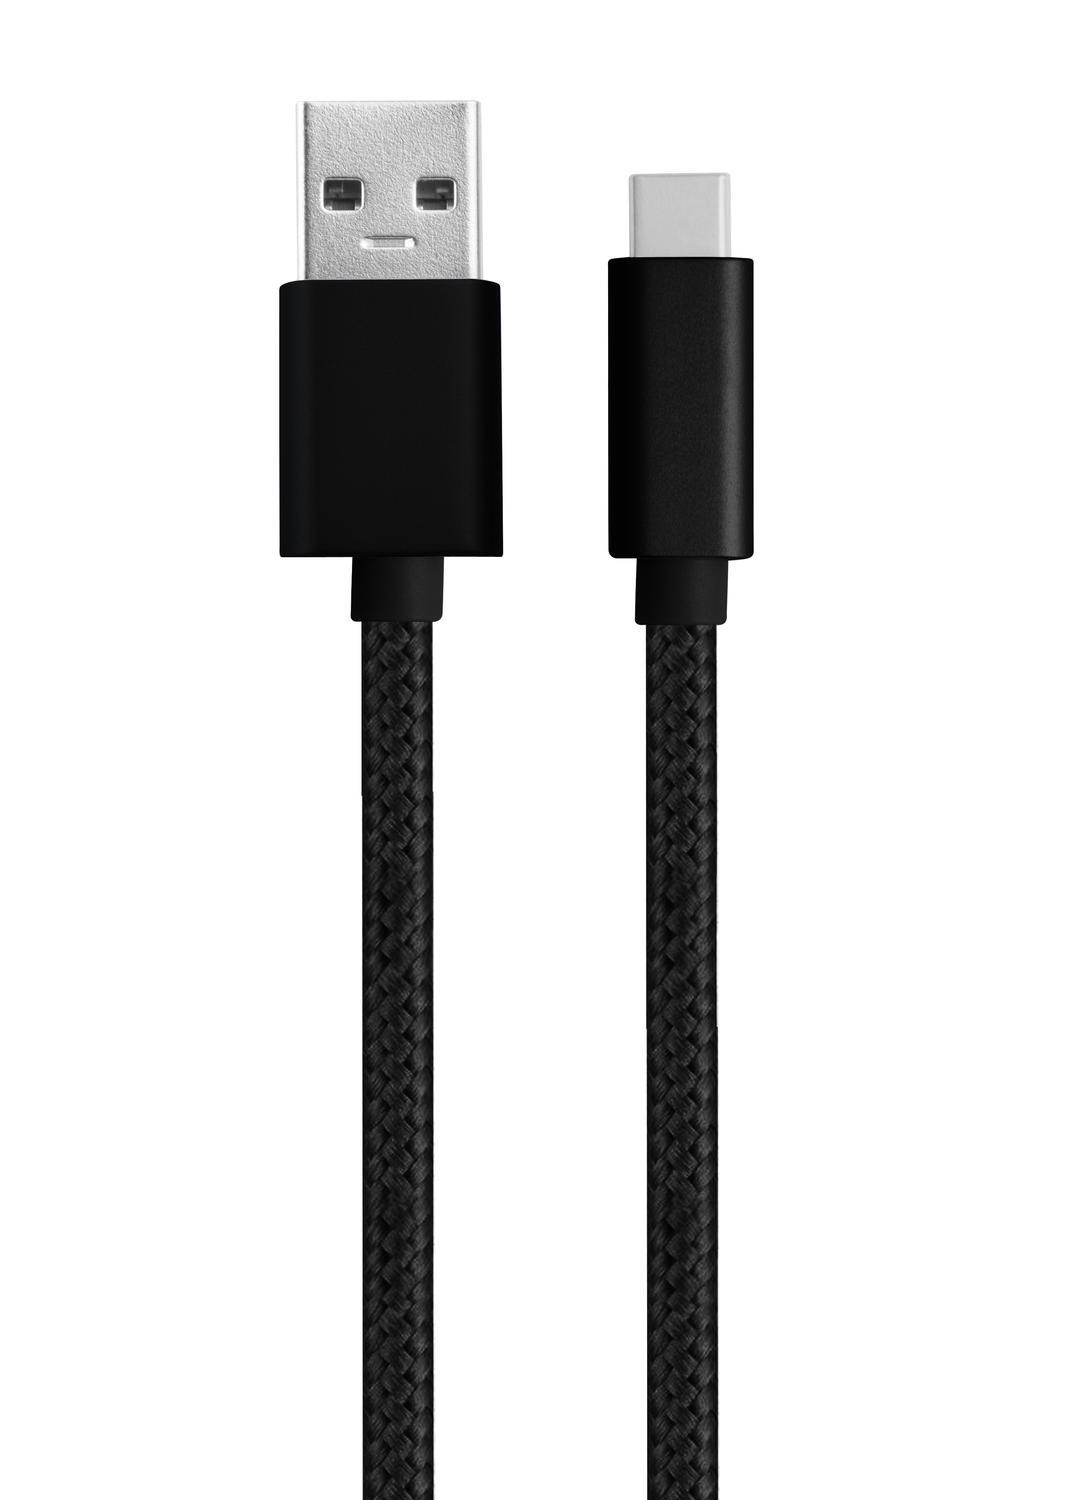 NÖRDIC 15cm USB C til USB En kabel USB3.1 Gen1 Rask lading 60W 5Gbps 3A, Nylon flettet svart